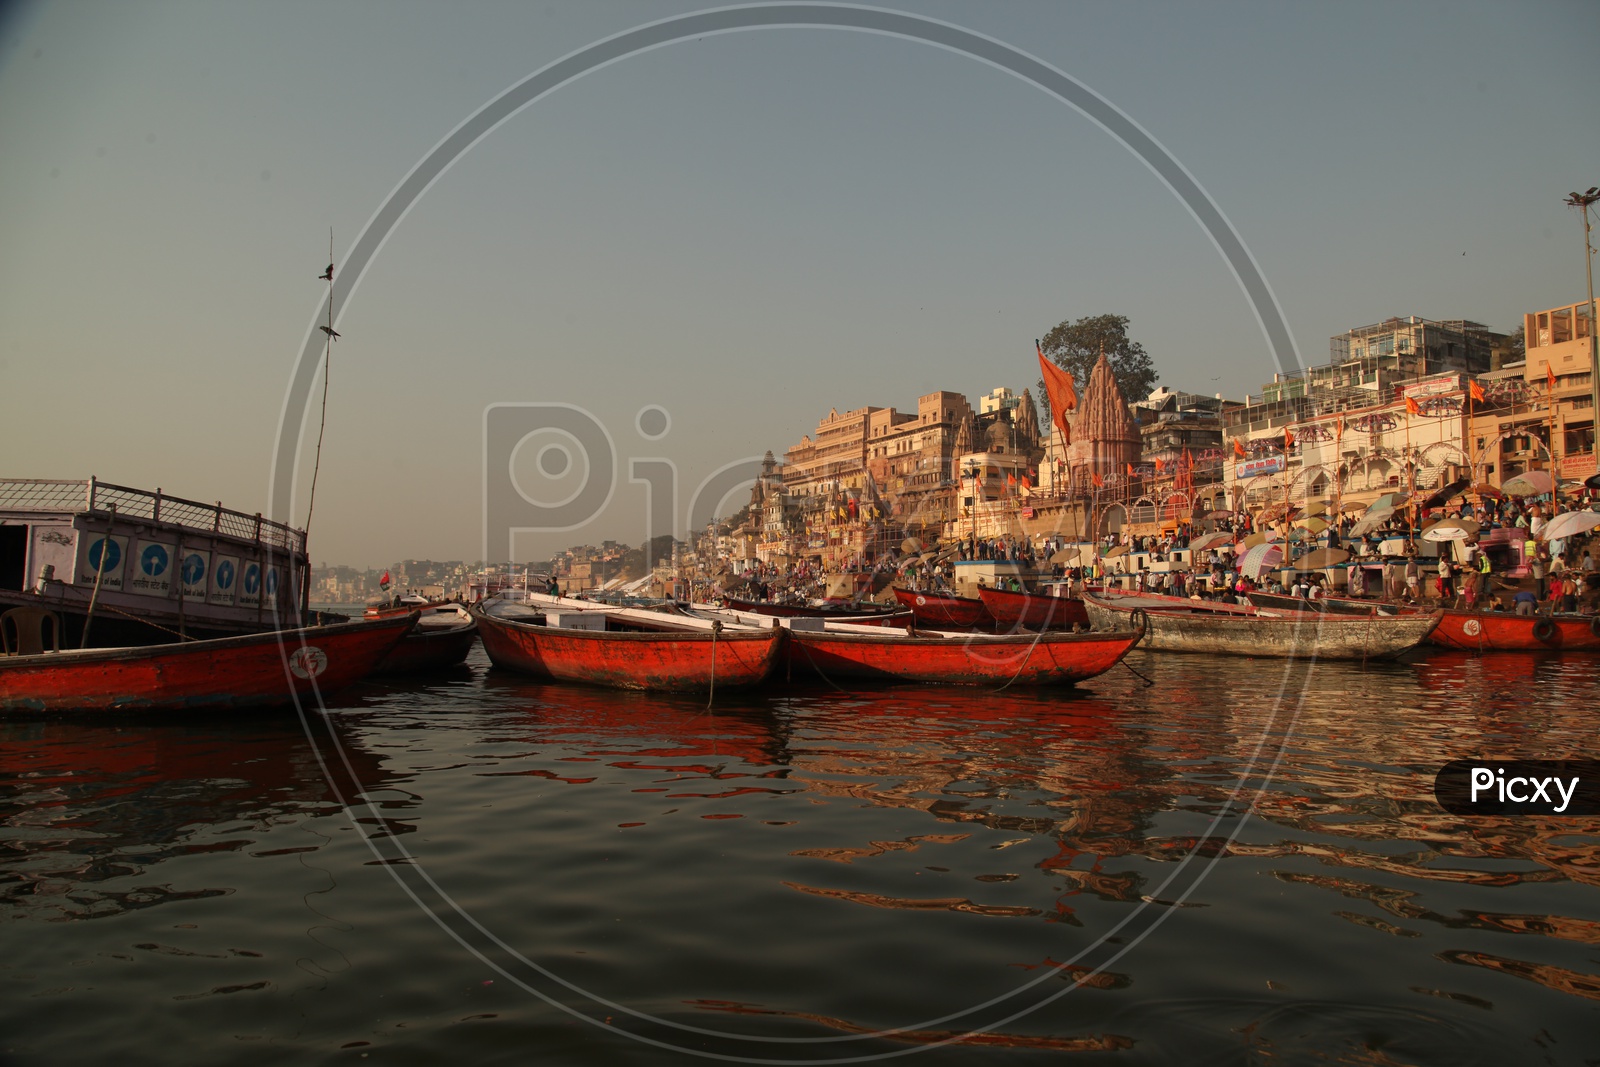 Varanasi Ghats with boats and visitors